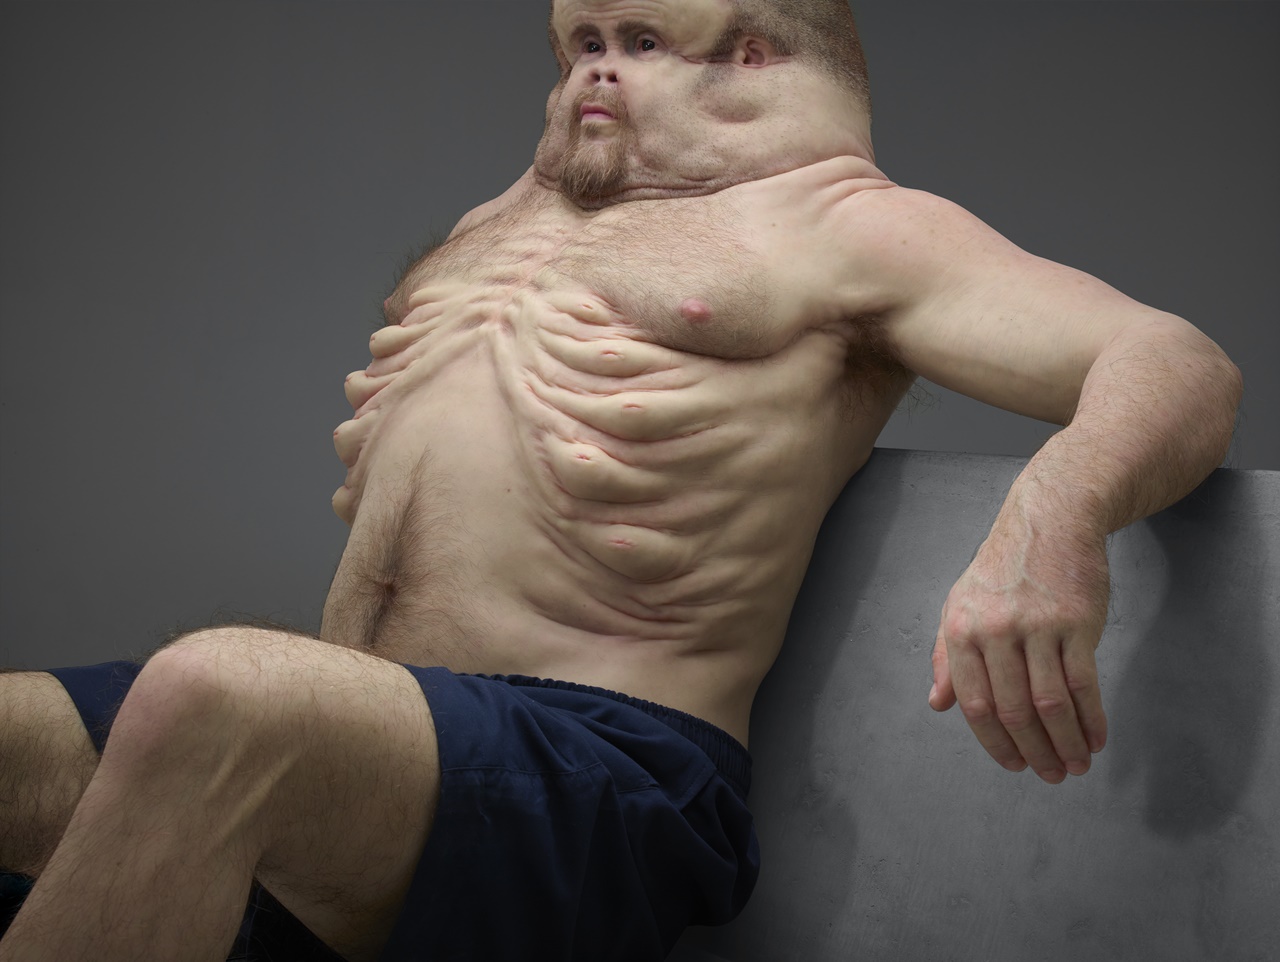 Esta grotesca escultura tem uma importante mensagem sobre a fragilidade do corpo humano